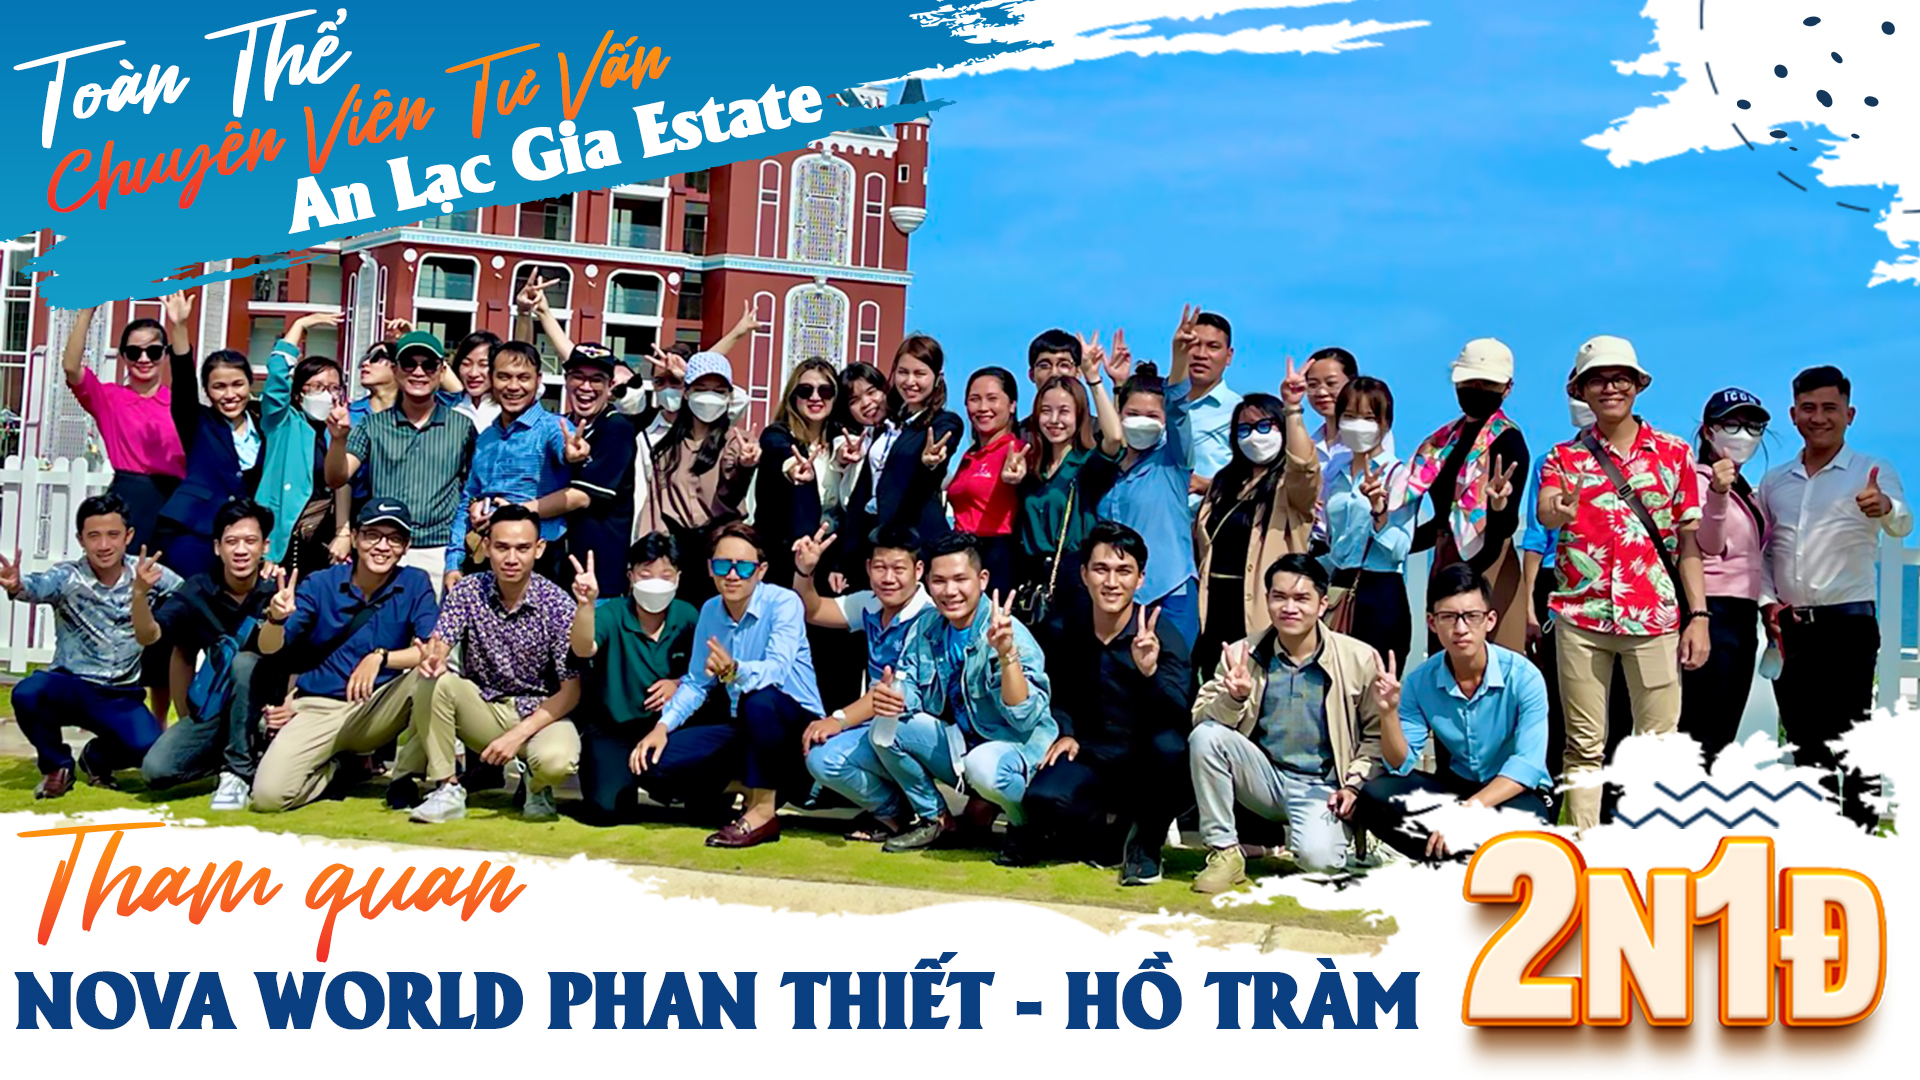 An Lạc Gia Estate tham quan NovaWorld Phan Thiết - Hồ Tràm